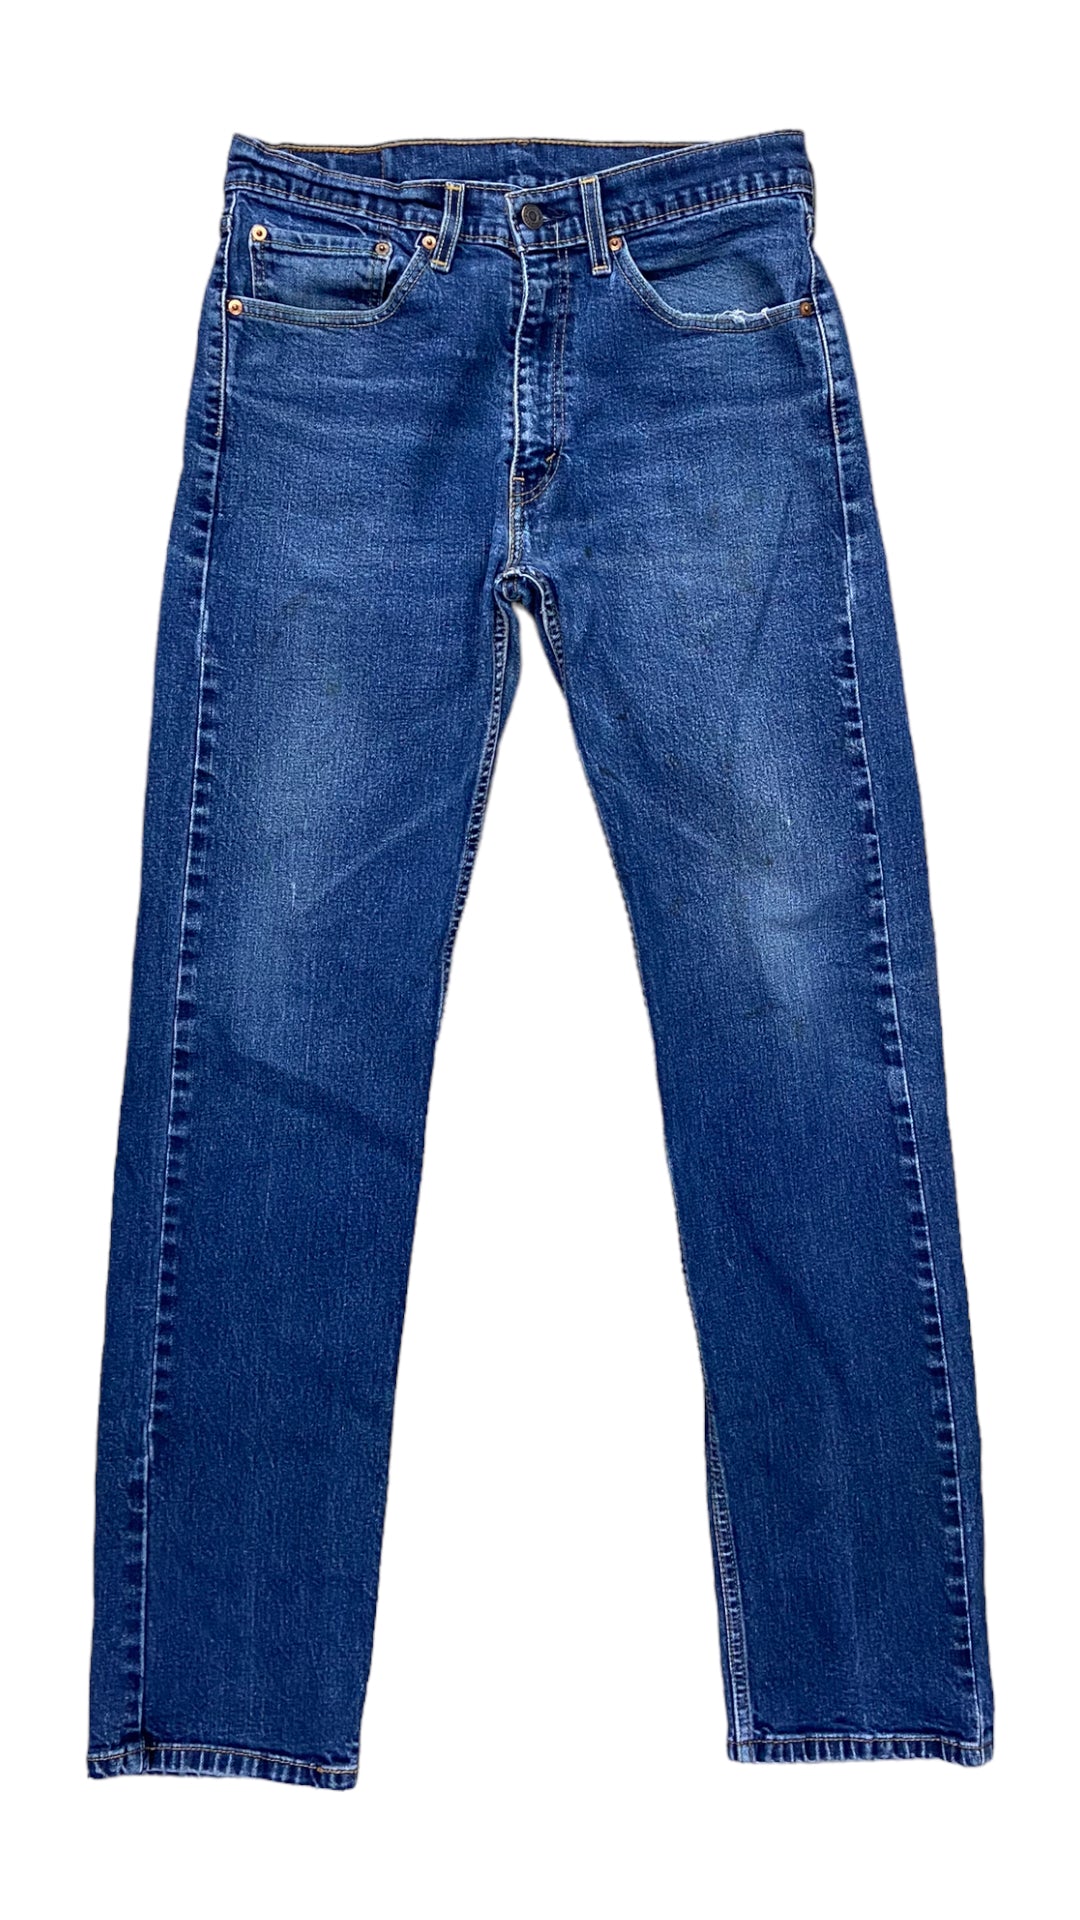 VTG Blue Wash Levi's 505 Jeans Sz 34x34